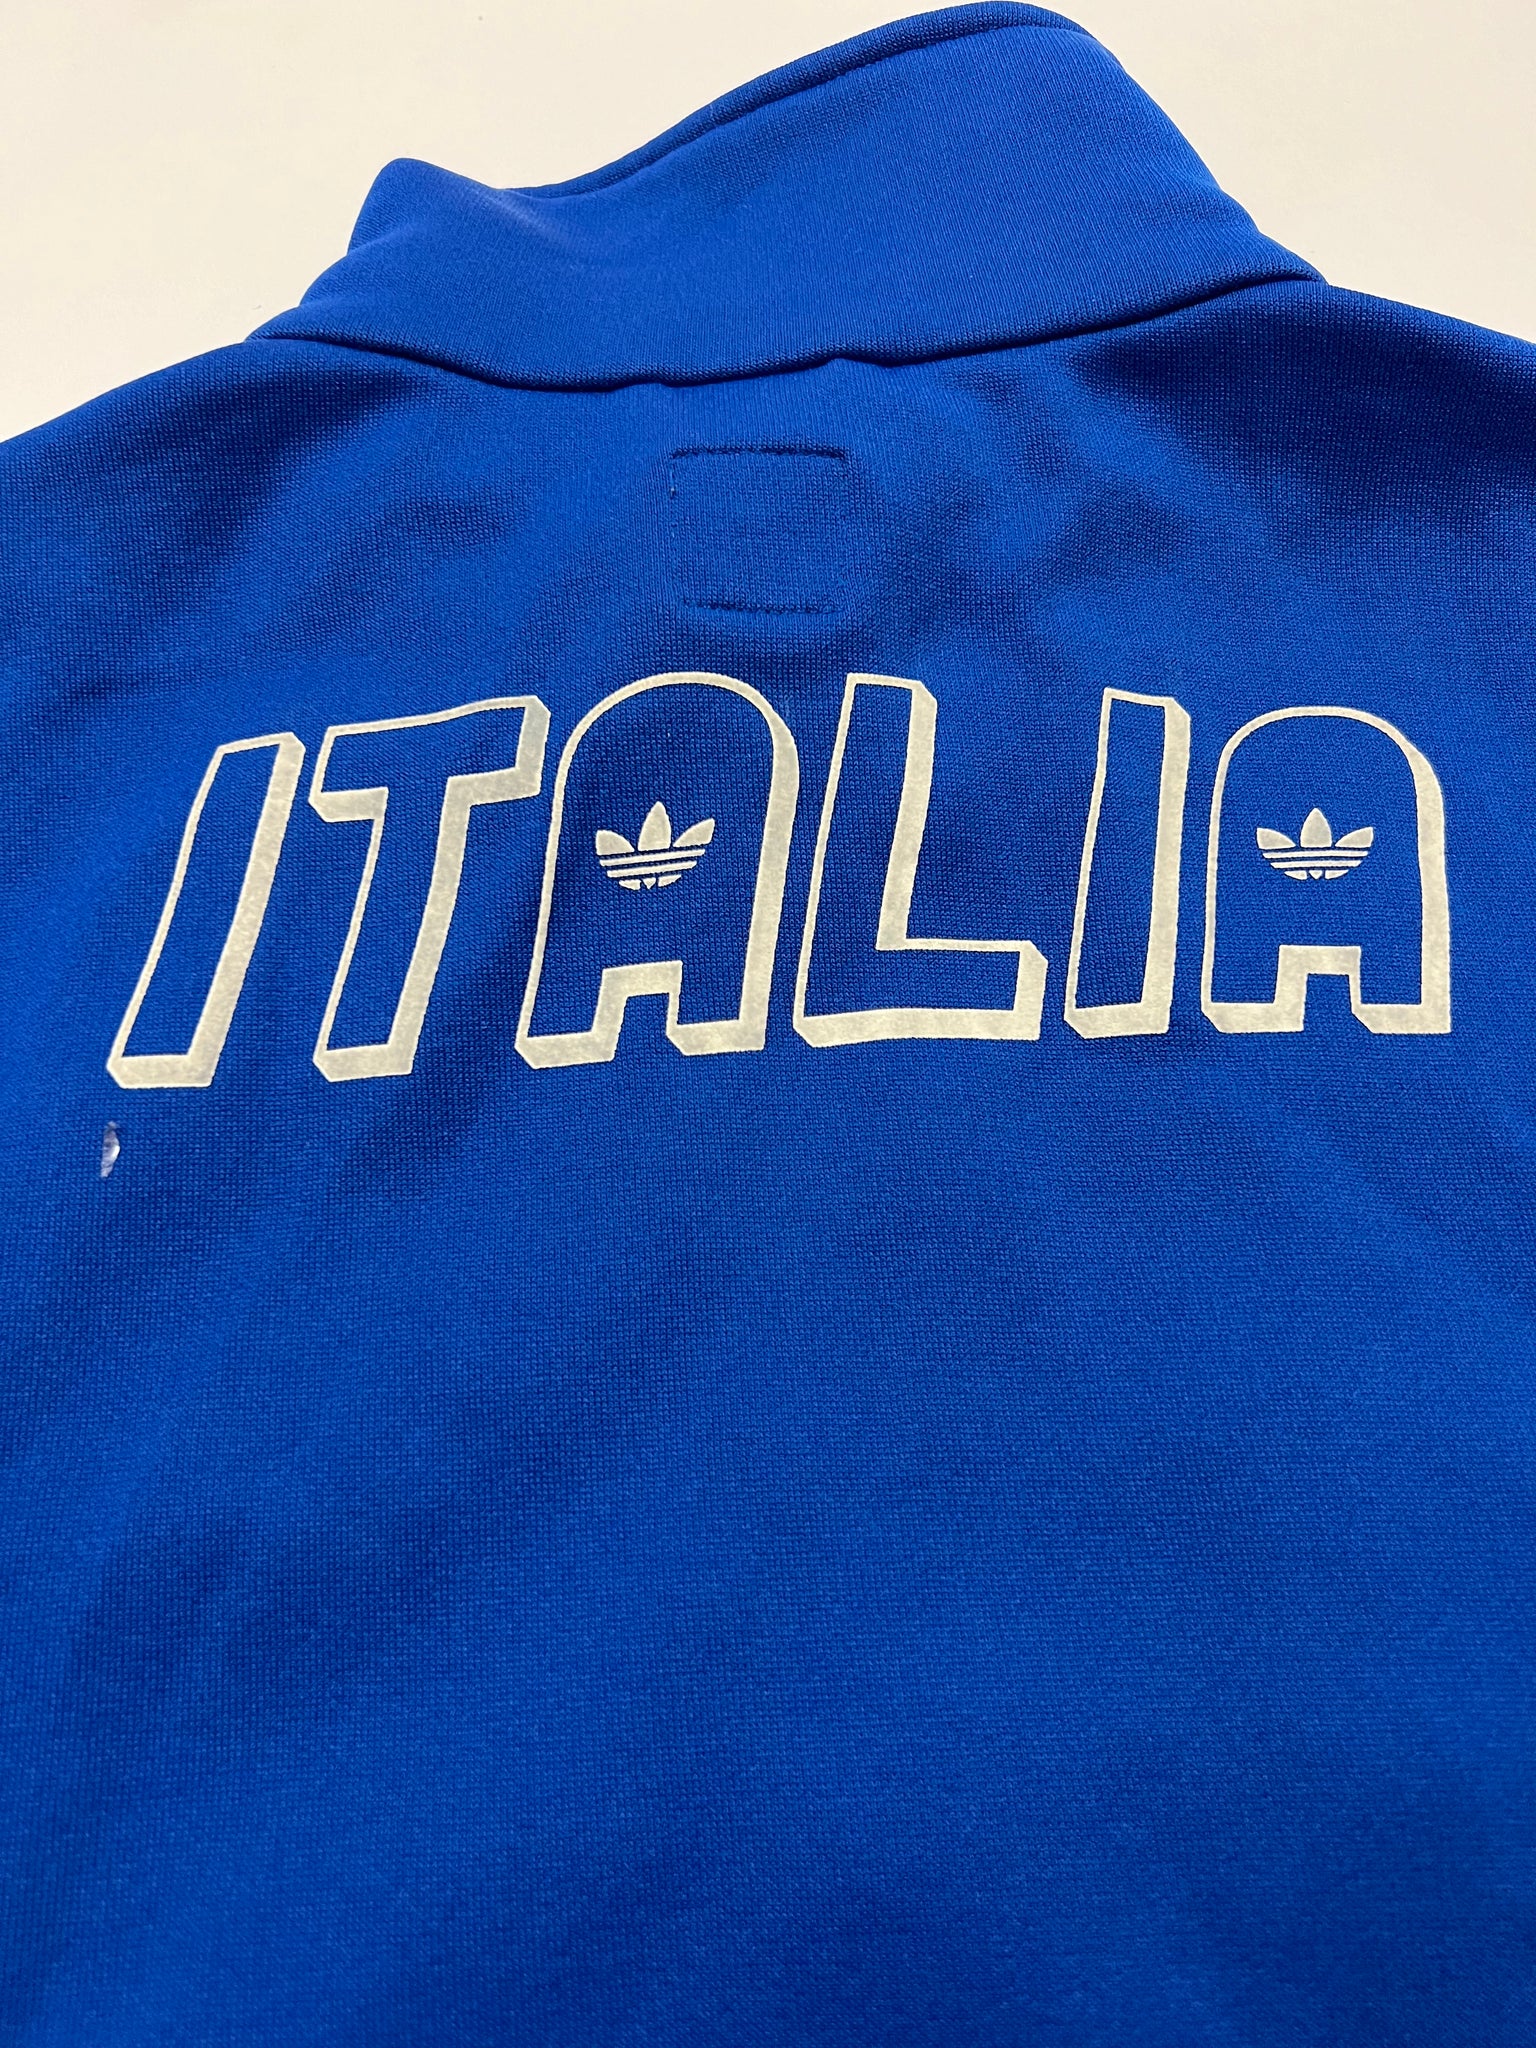 Adidas Italia Track Jacket (S)